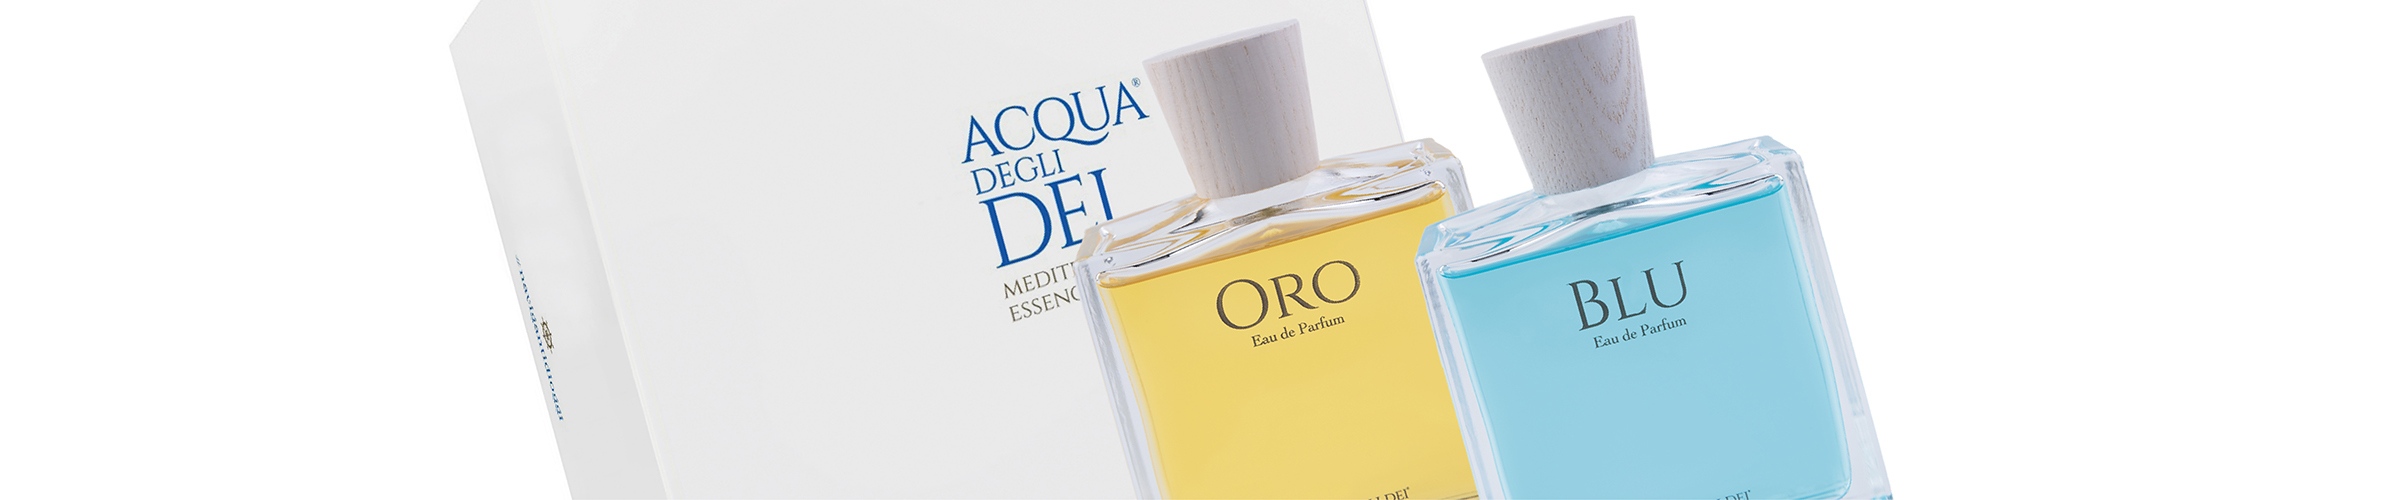 I due eau de parfum Blu e Oro nel formato da 30 ml, custoditi nell’elegante cofanetto da regalo.